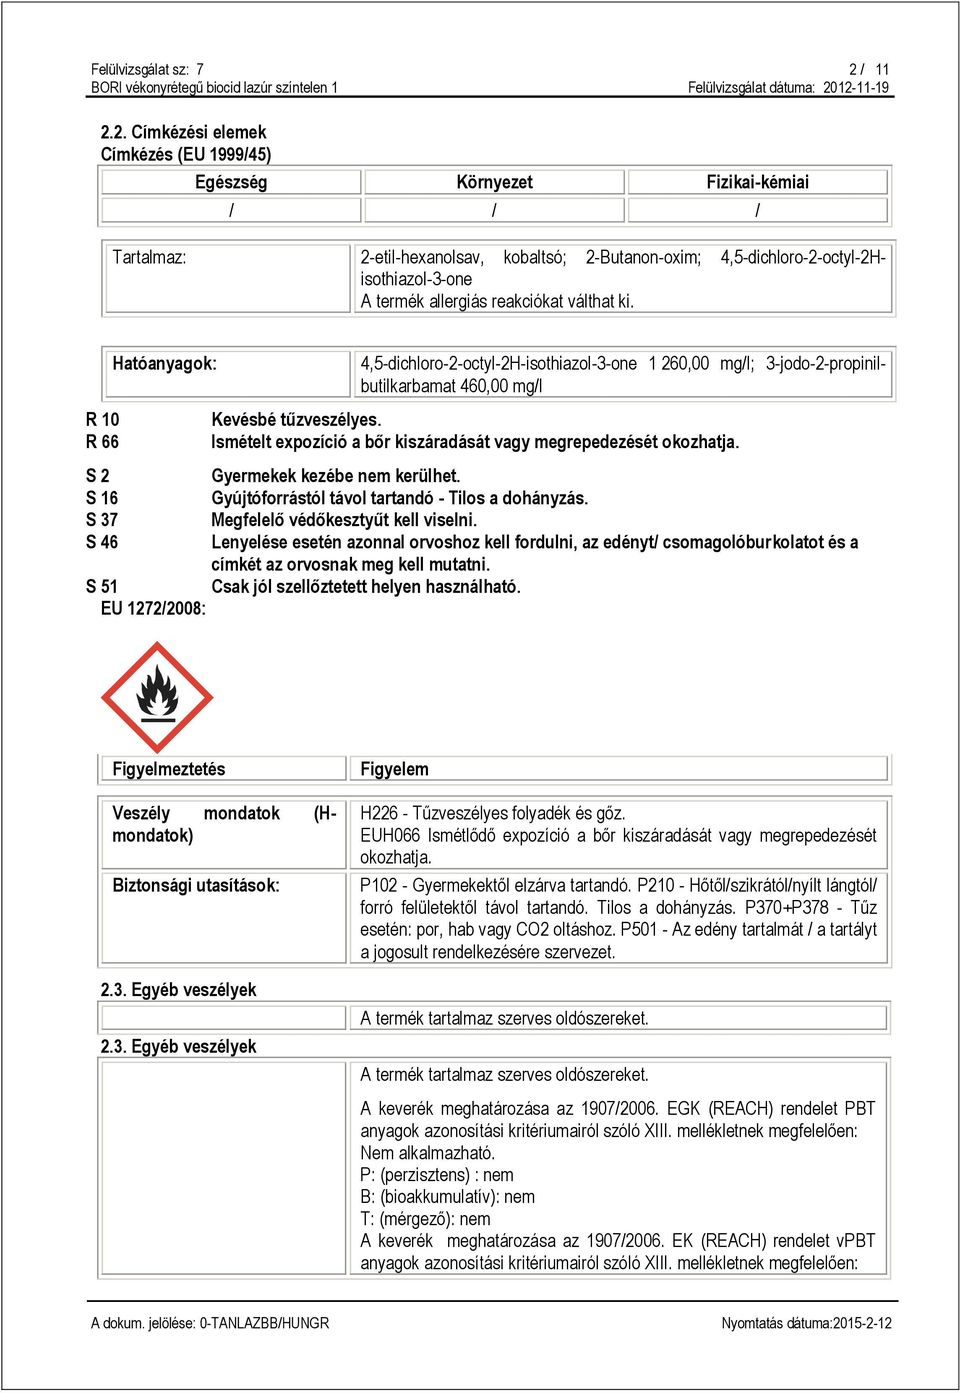 2. Címkézési elemek Címkézés (EU 1999/45) Egészség Környezet Fizikai-kémiai / / / Tartalmaz: 2-etil-hexanolsav, kobaltsó; 2-Butanon-oxim; 4,5-dichloro-2-octyl-2Hisothiazol-3-one A termék allergiás